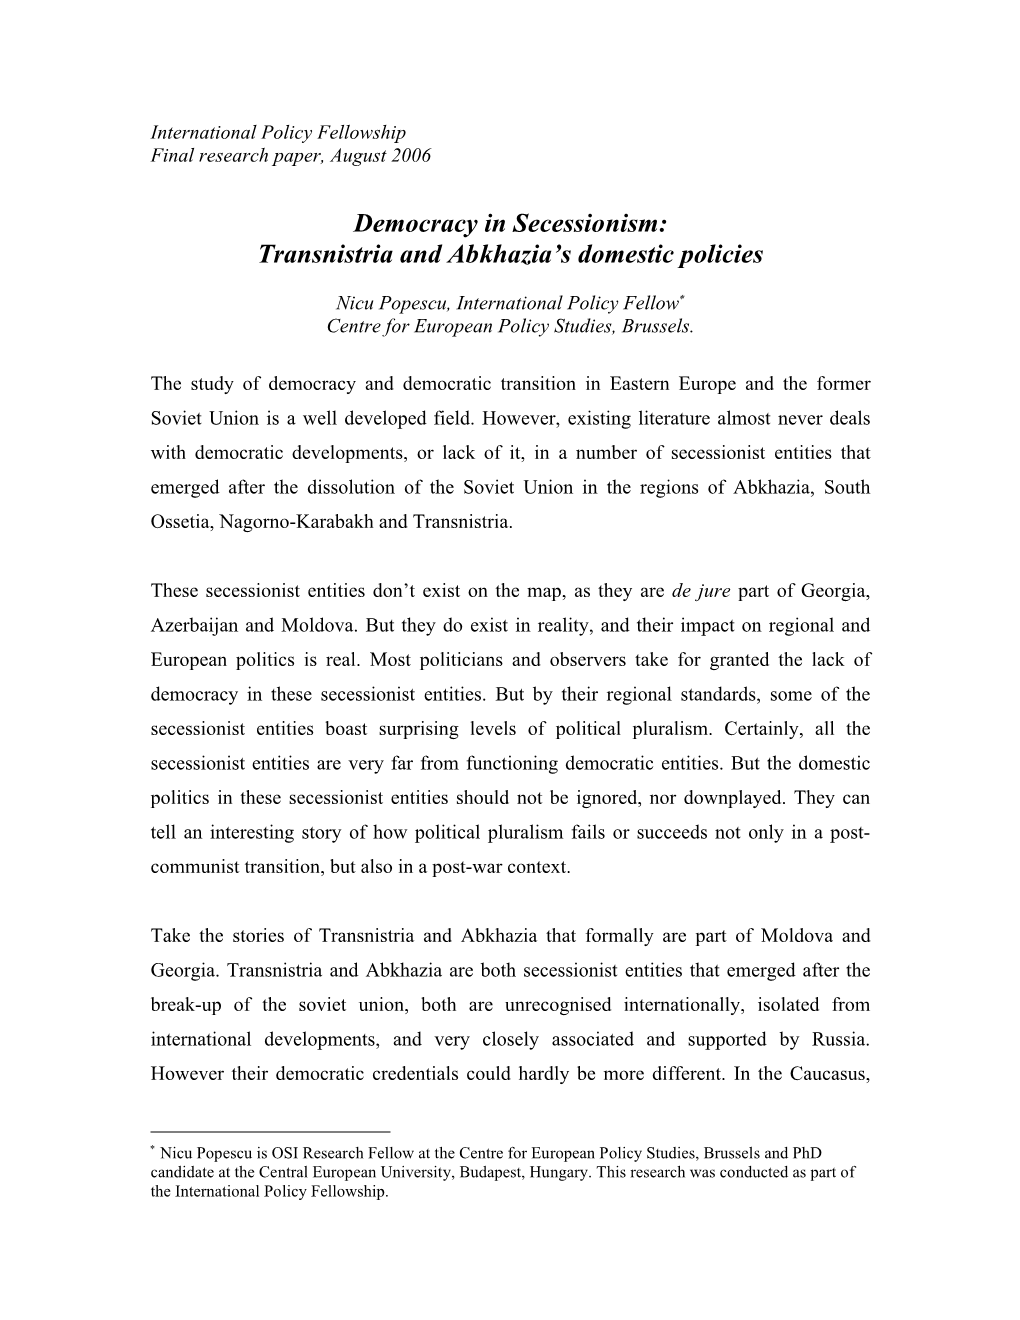 Democracy in Secessionism: Transnistria and Abkhazia’S Domestic Policies